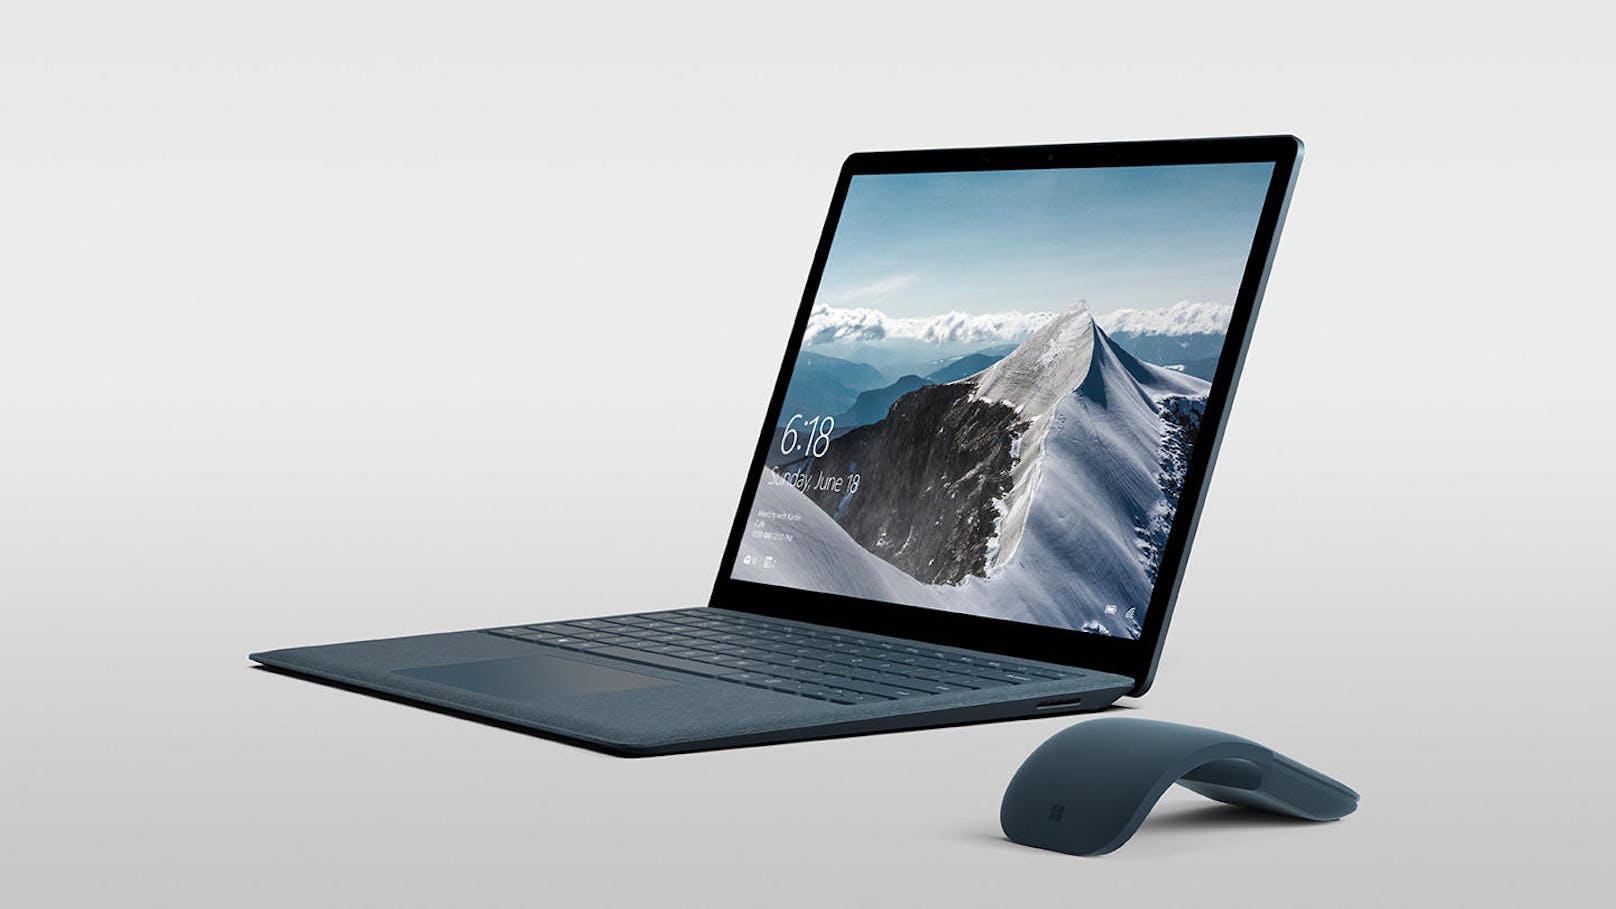 Der Surface Laptop wird in vier verschiedenen Modell-Varianten ab einem Preis von 1.149 Euro angeboten.